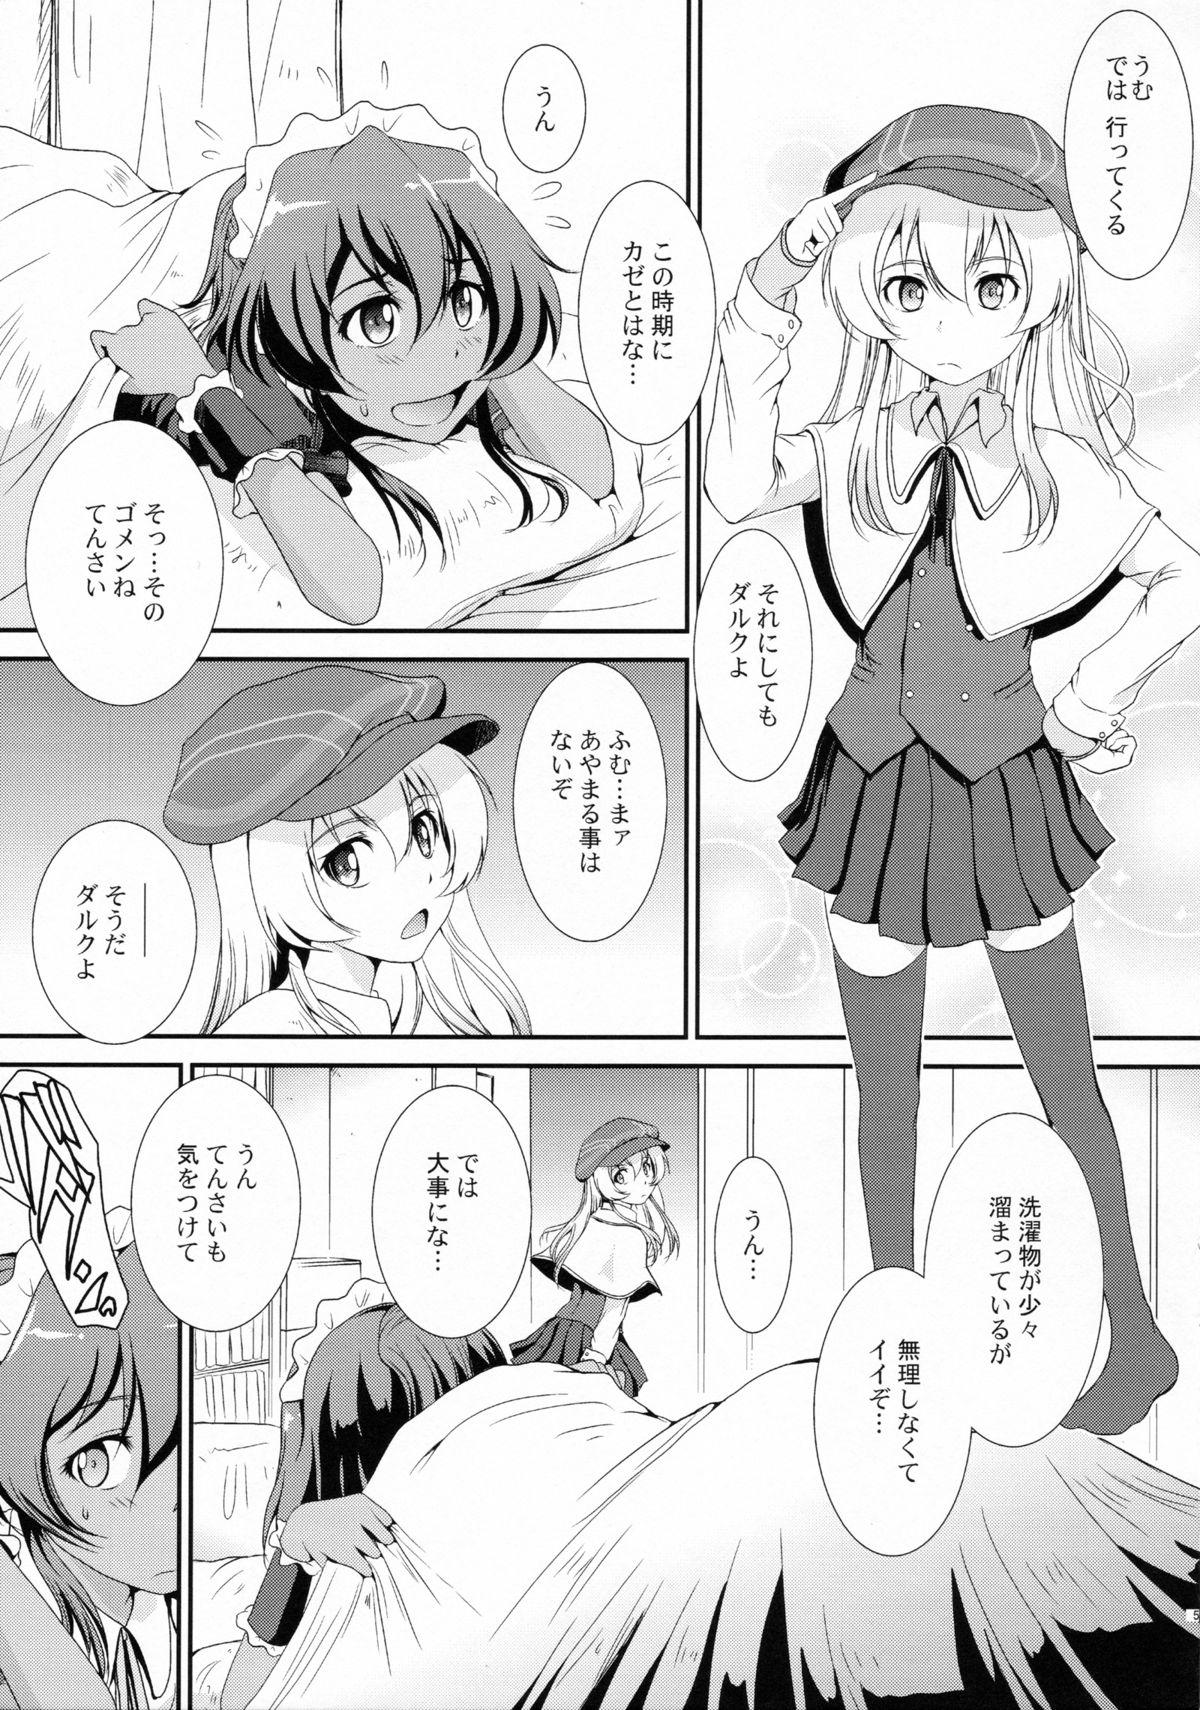 Sologirl (C86) [MACV-SOG (MAC-V)] T-T-T-T-Tensaai (Ryuugajou Nanana no Maizoukin) - Ryuugajou nanana no maizoukin Step Sister - Page 4